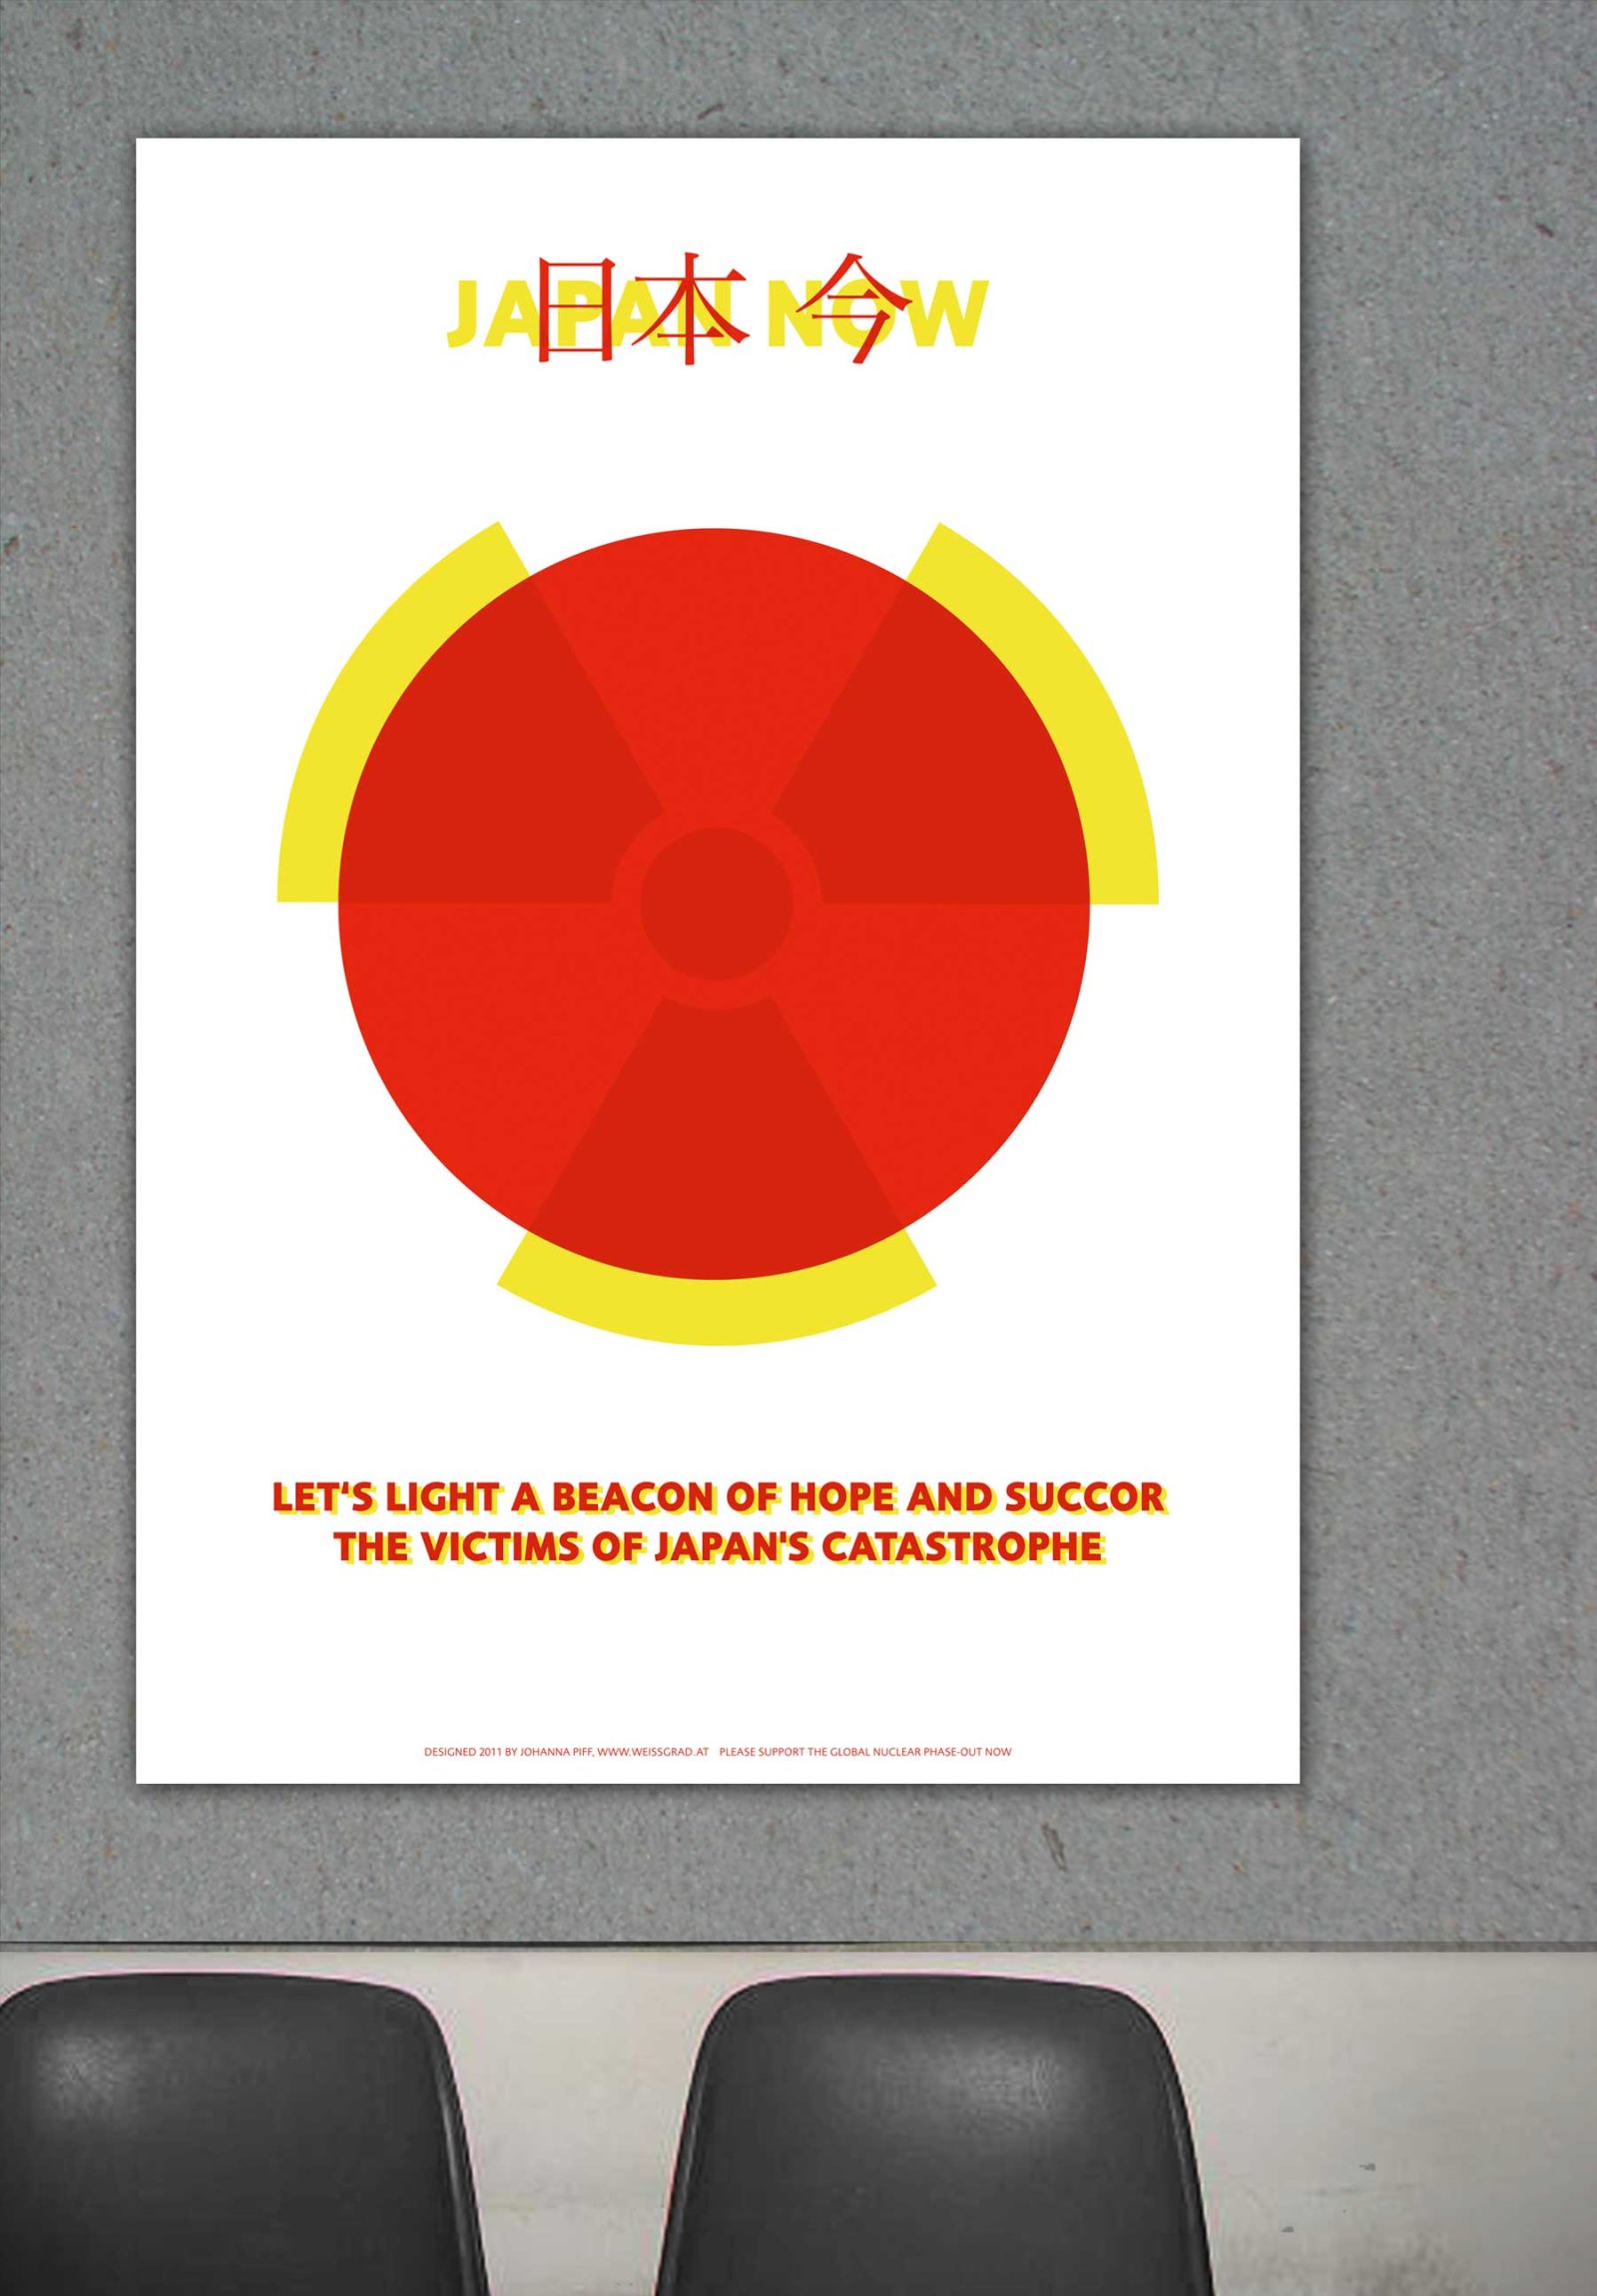 Plakat Japan now »Art-4-charity« Initiative für die Opfer der Nuklearkatastrophe von Fukushima 2011